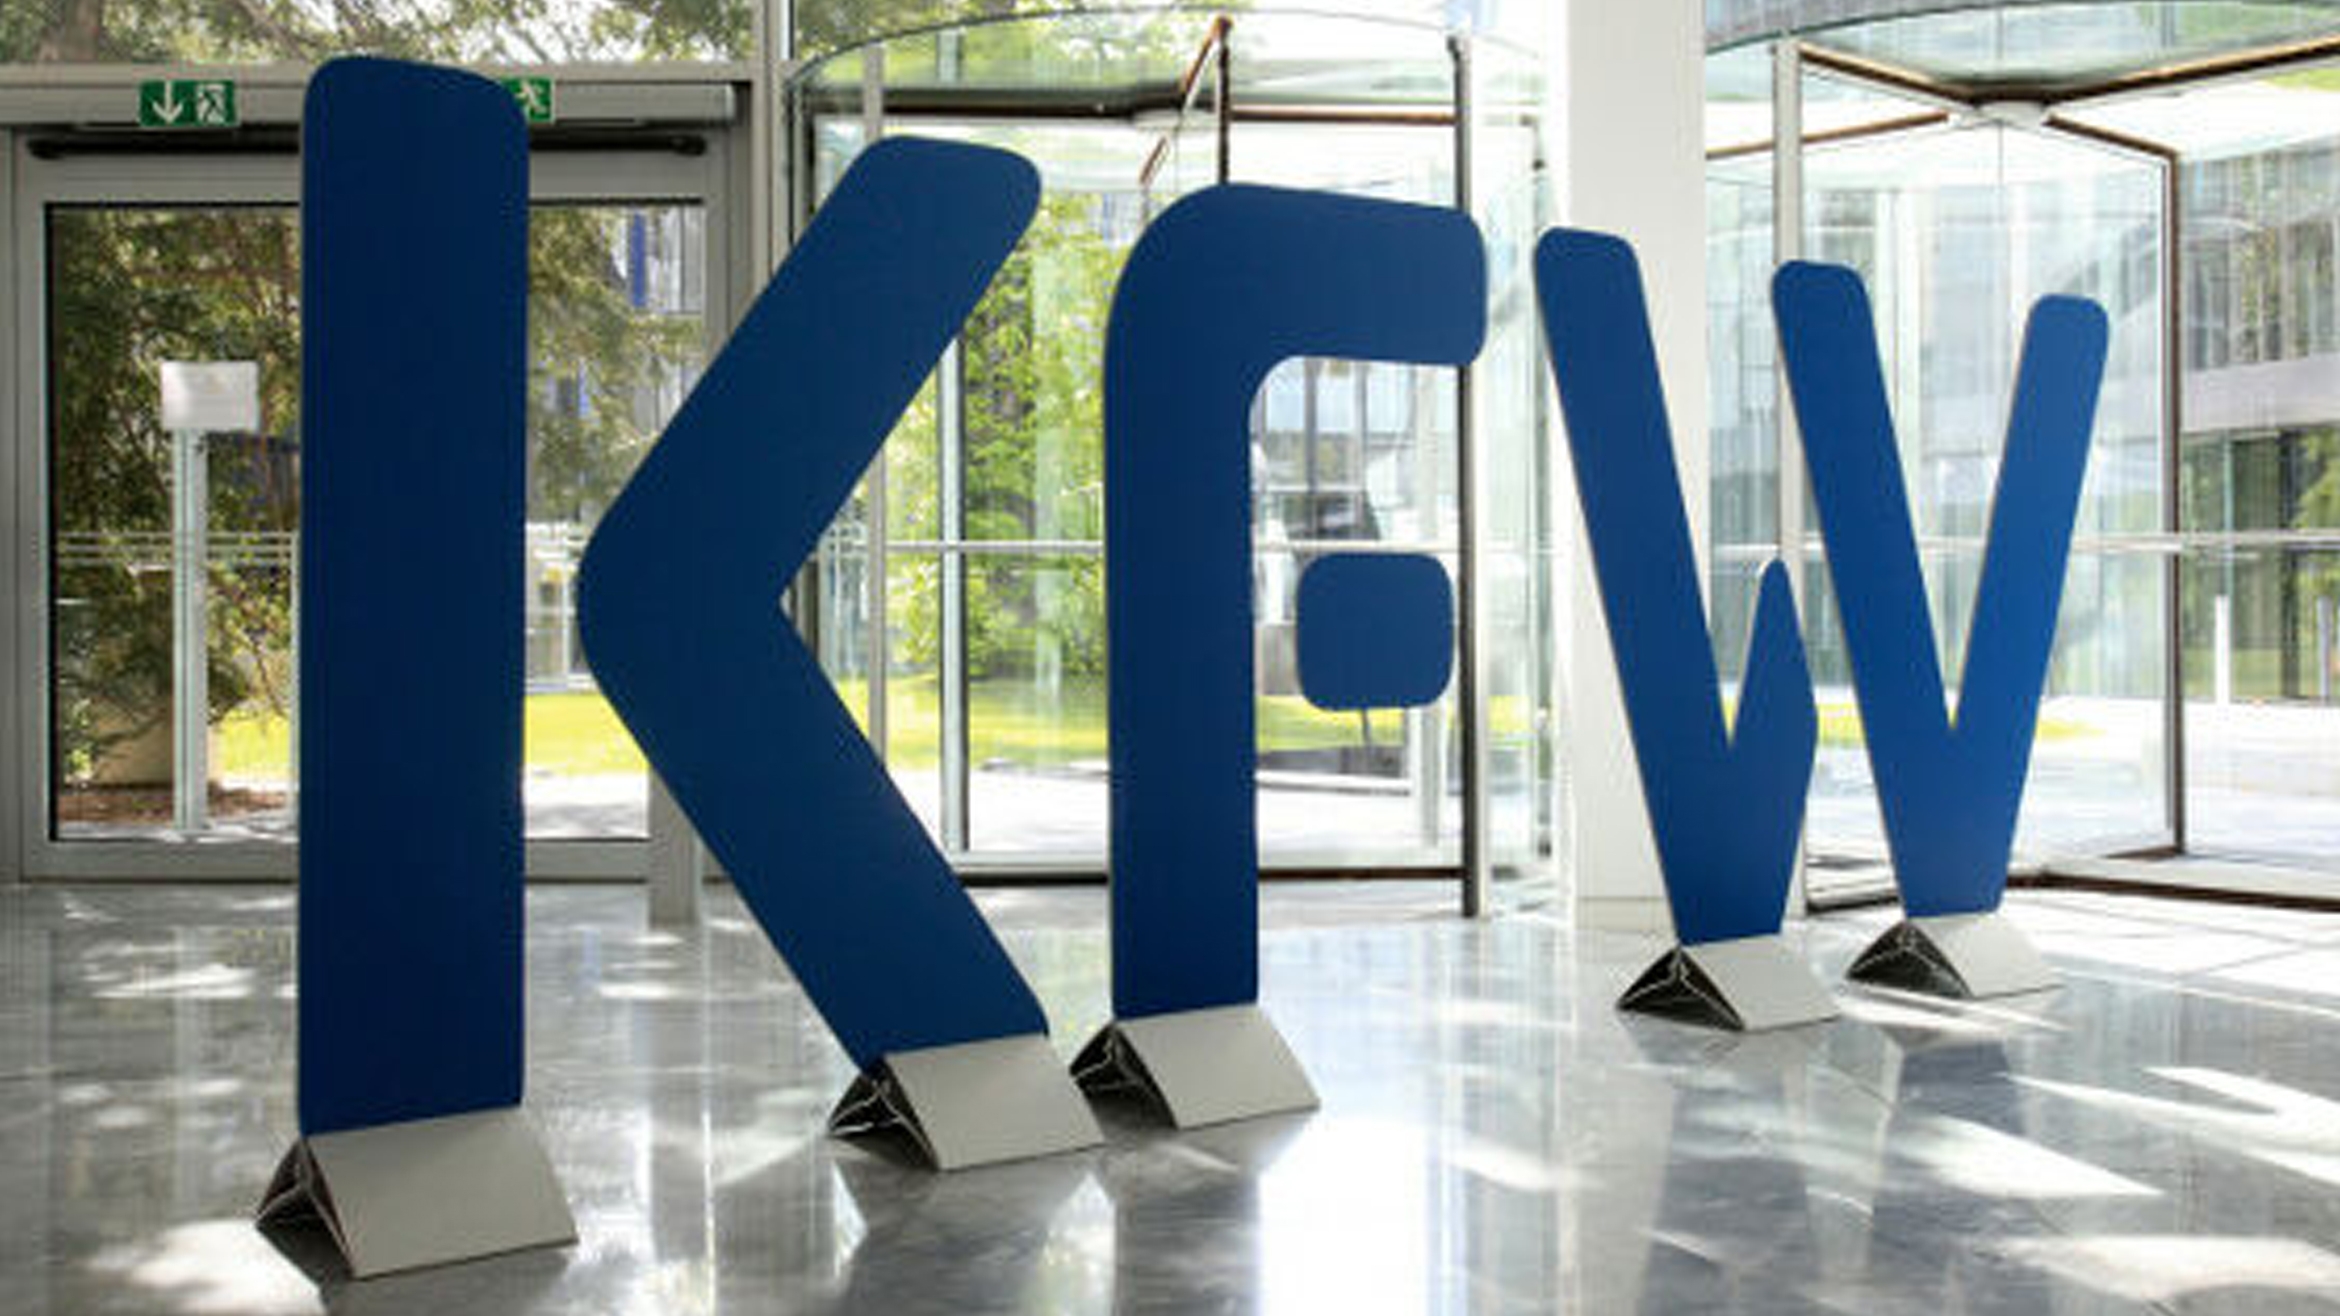 Die KfW will mit Unterstütung von Axrl Springer Corporate Solutions künftig kanal- und zielgruppengerecht kommunizieren –